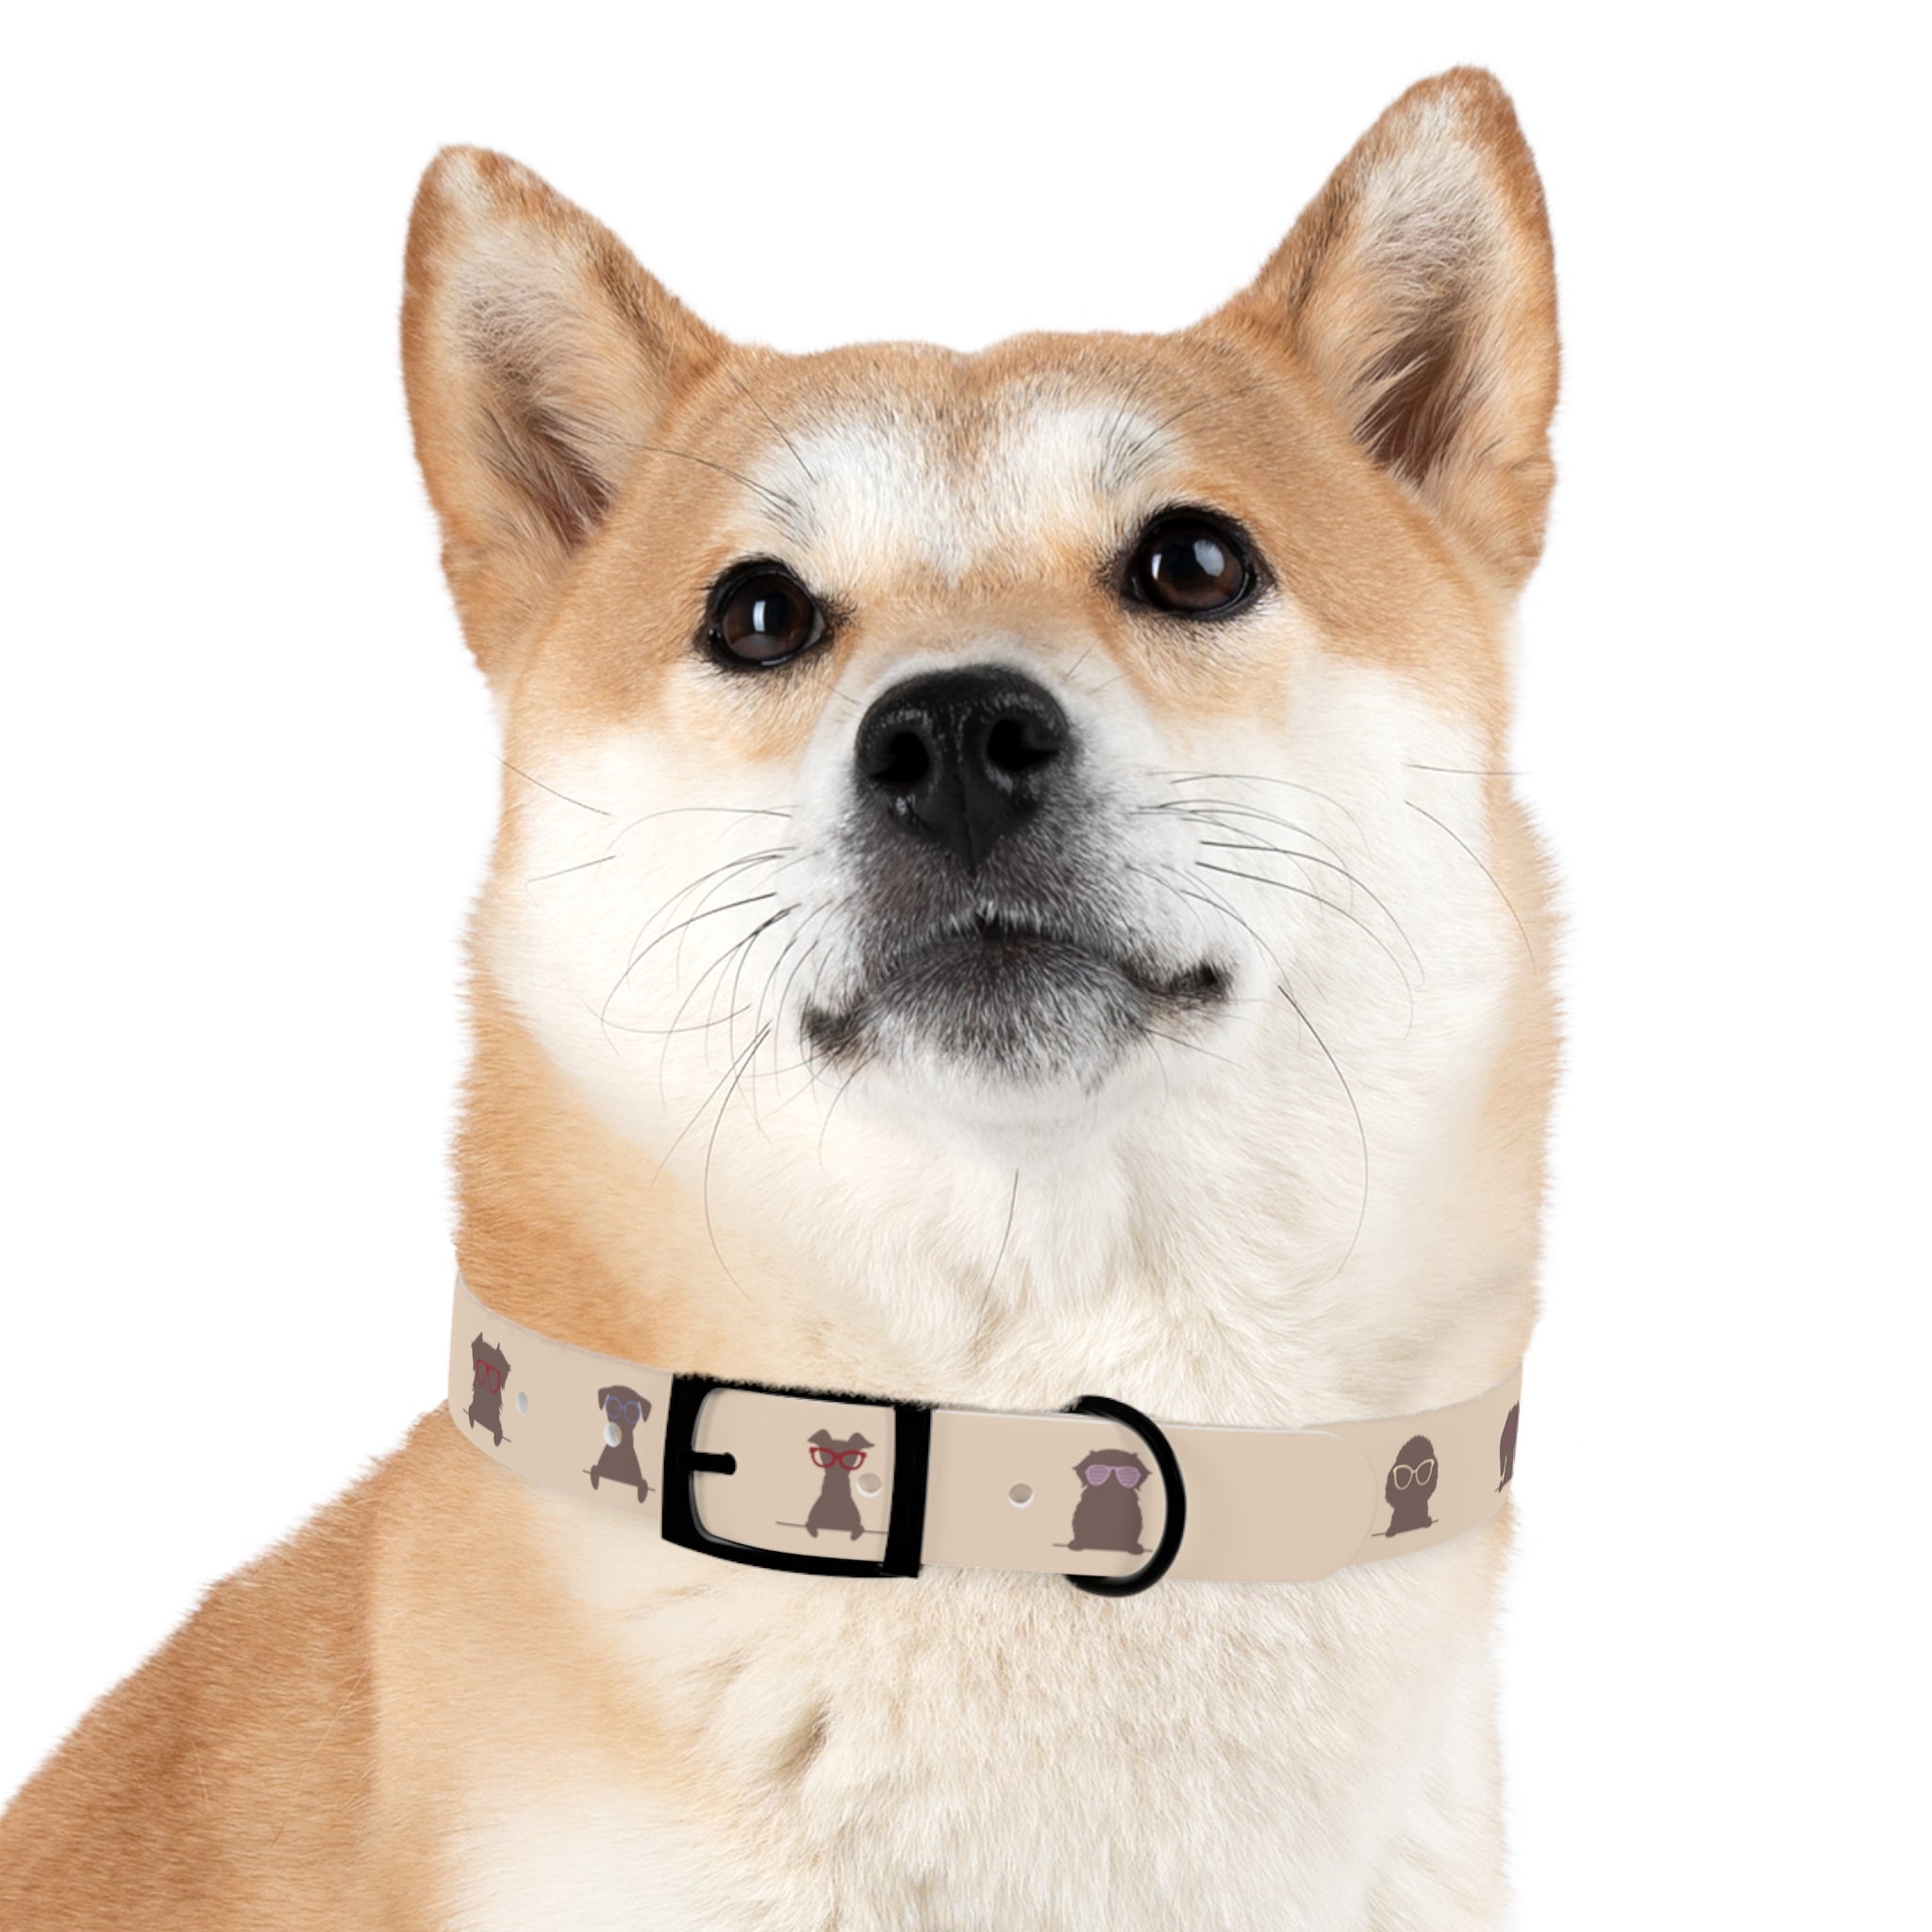 Diggity Dog - Tan/Oatmeal Dog Collar